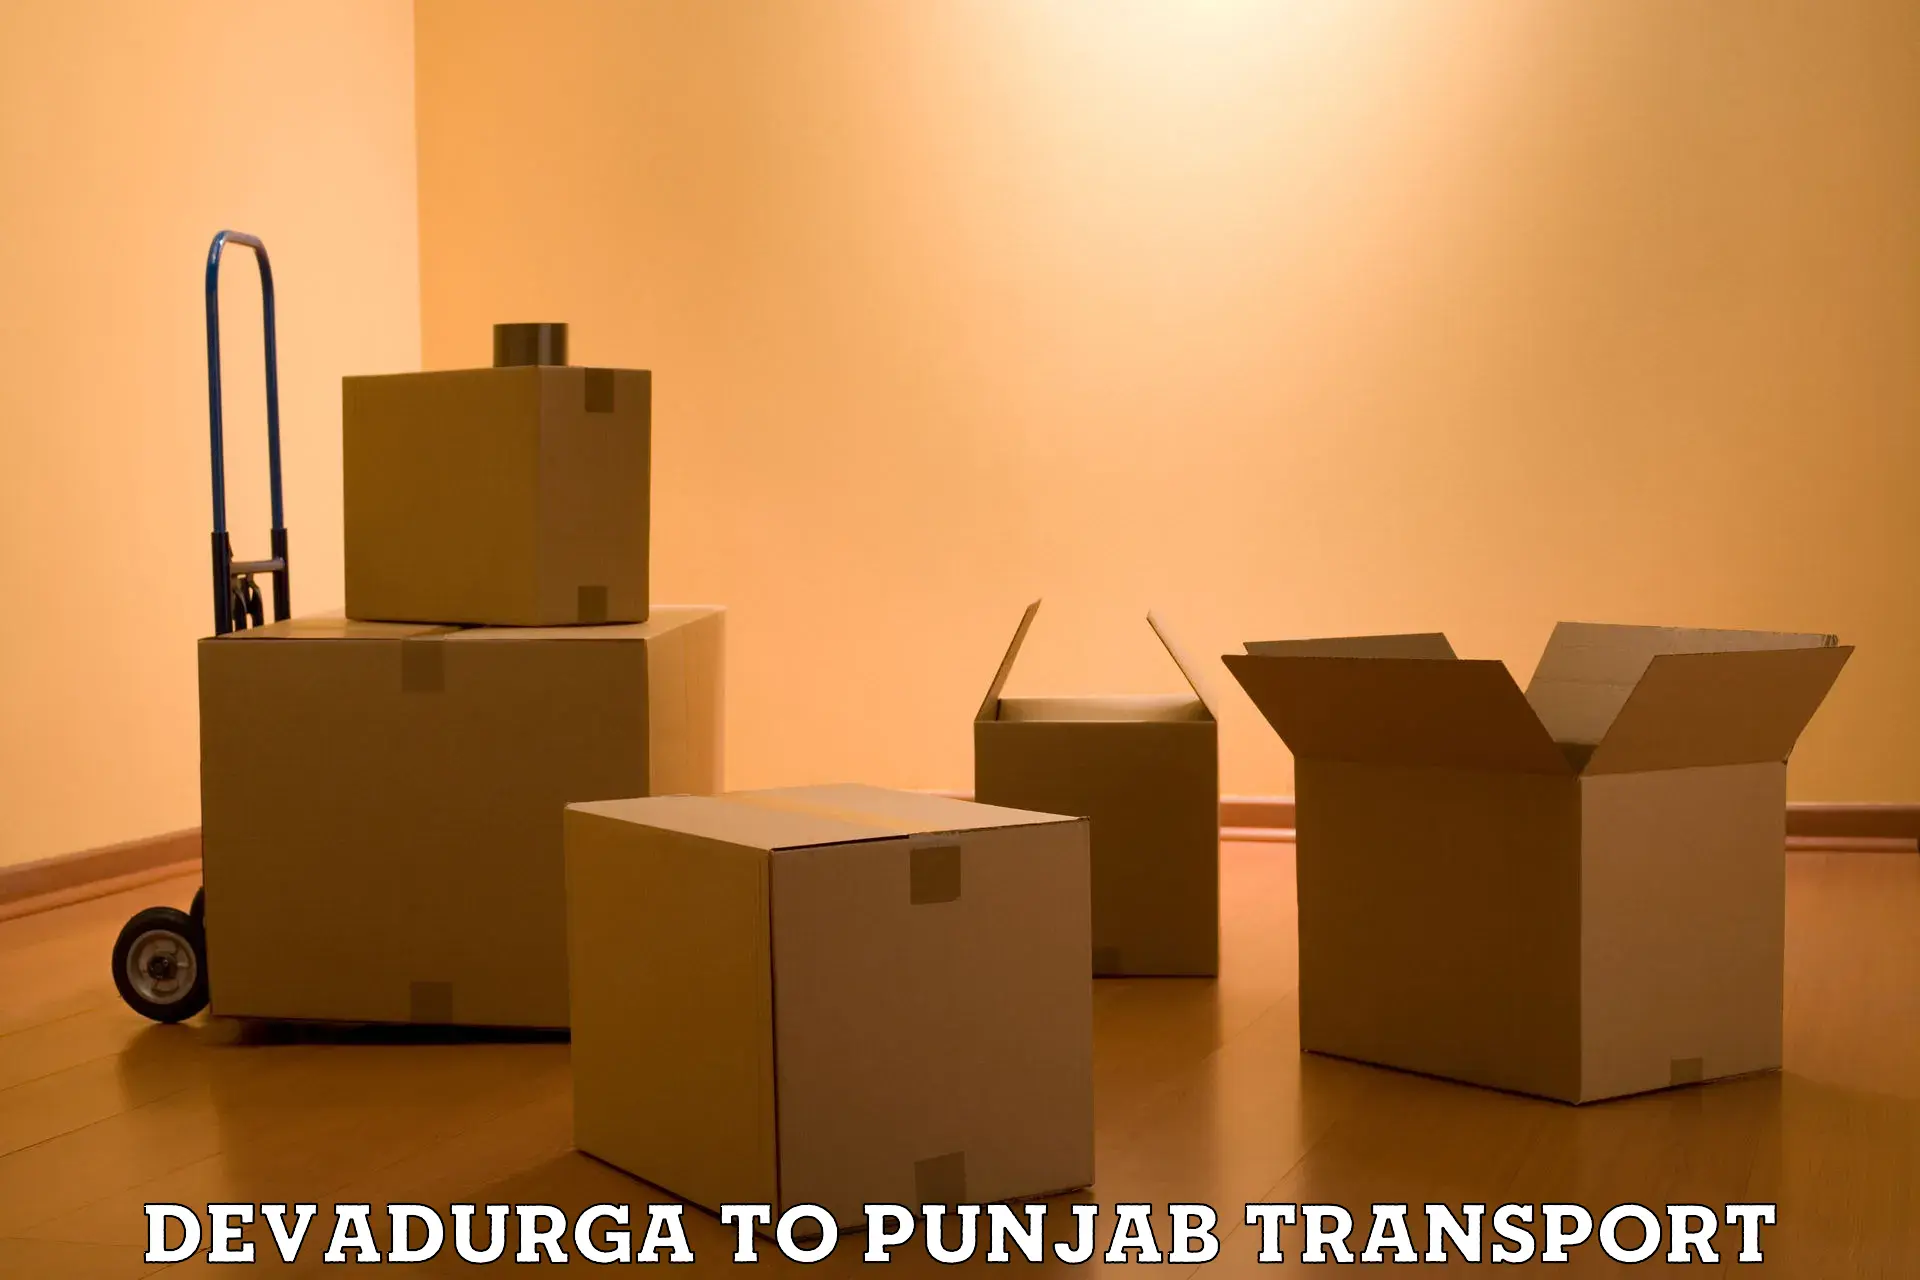 Parcel transport services Devadurga to Sirhind Fatehgarh